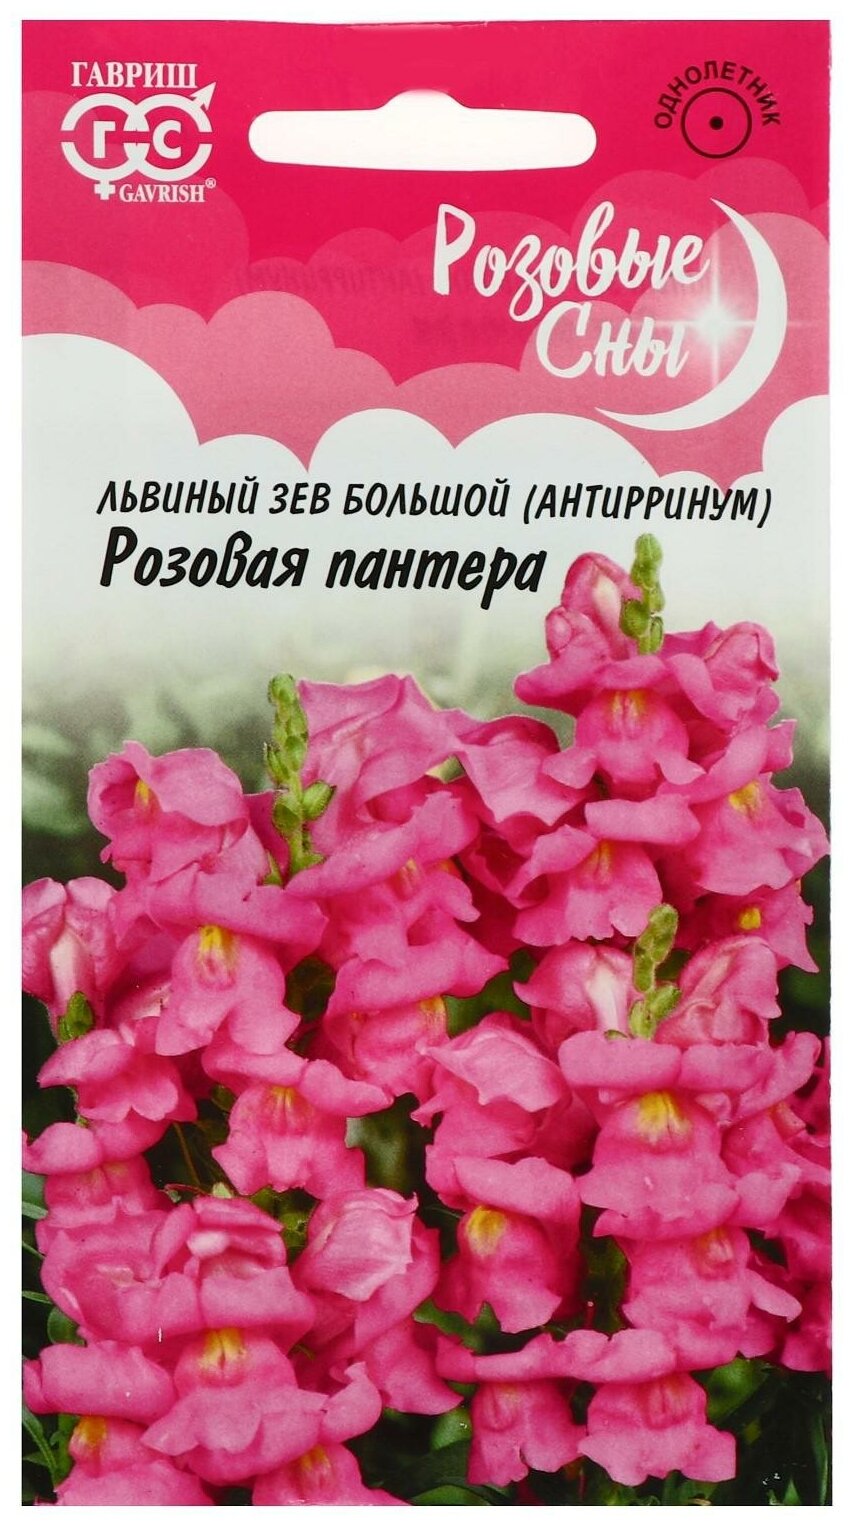 Семена цветов Антирринум (Львиный зев) "Розовая пантера" серия Розовые сны 01 г